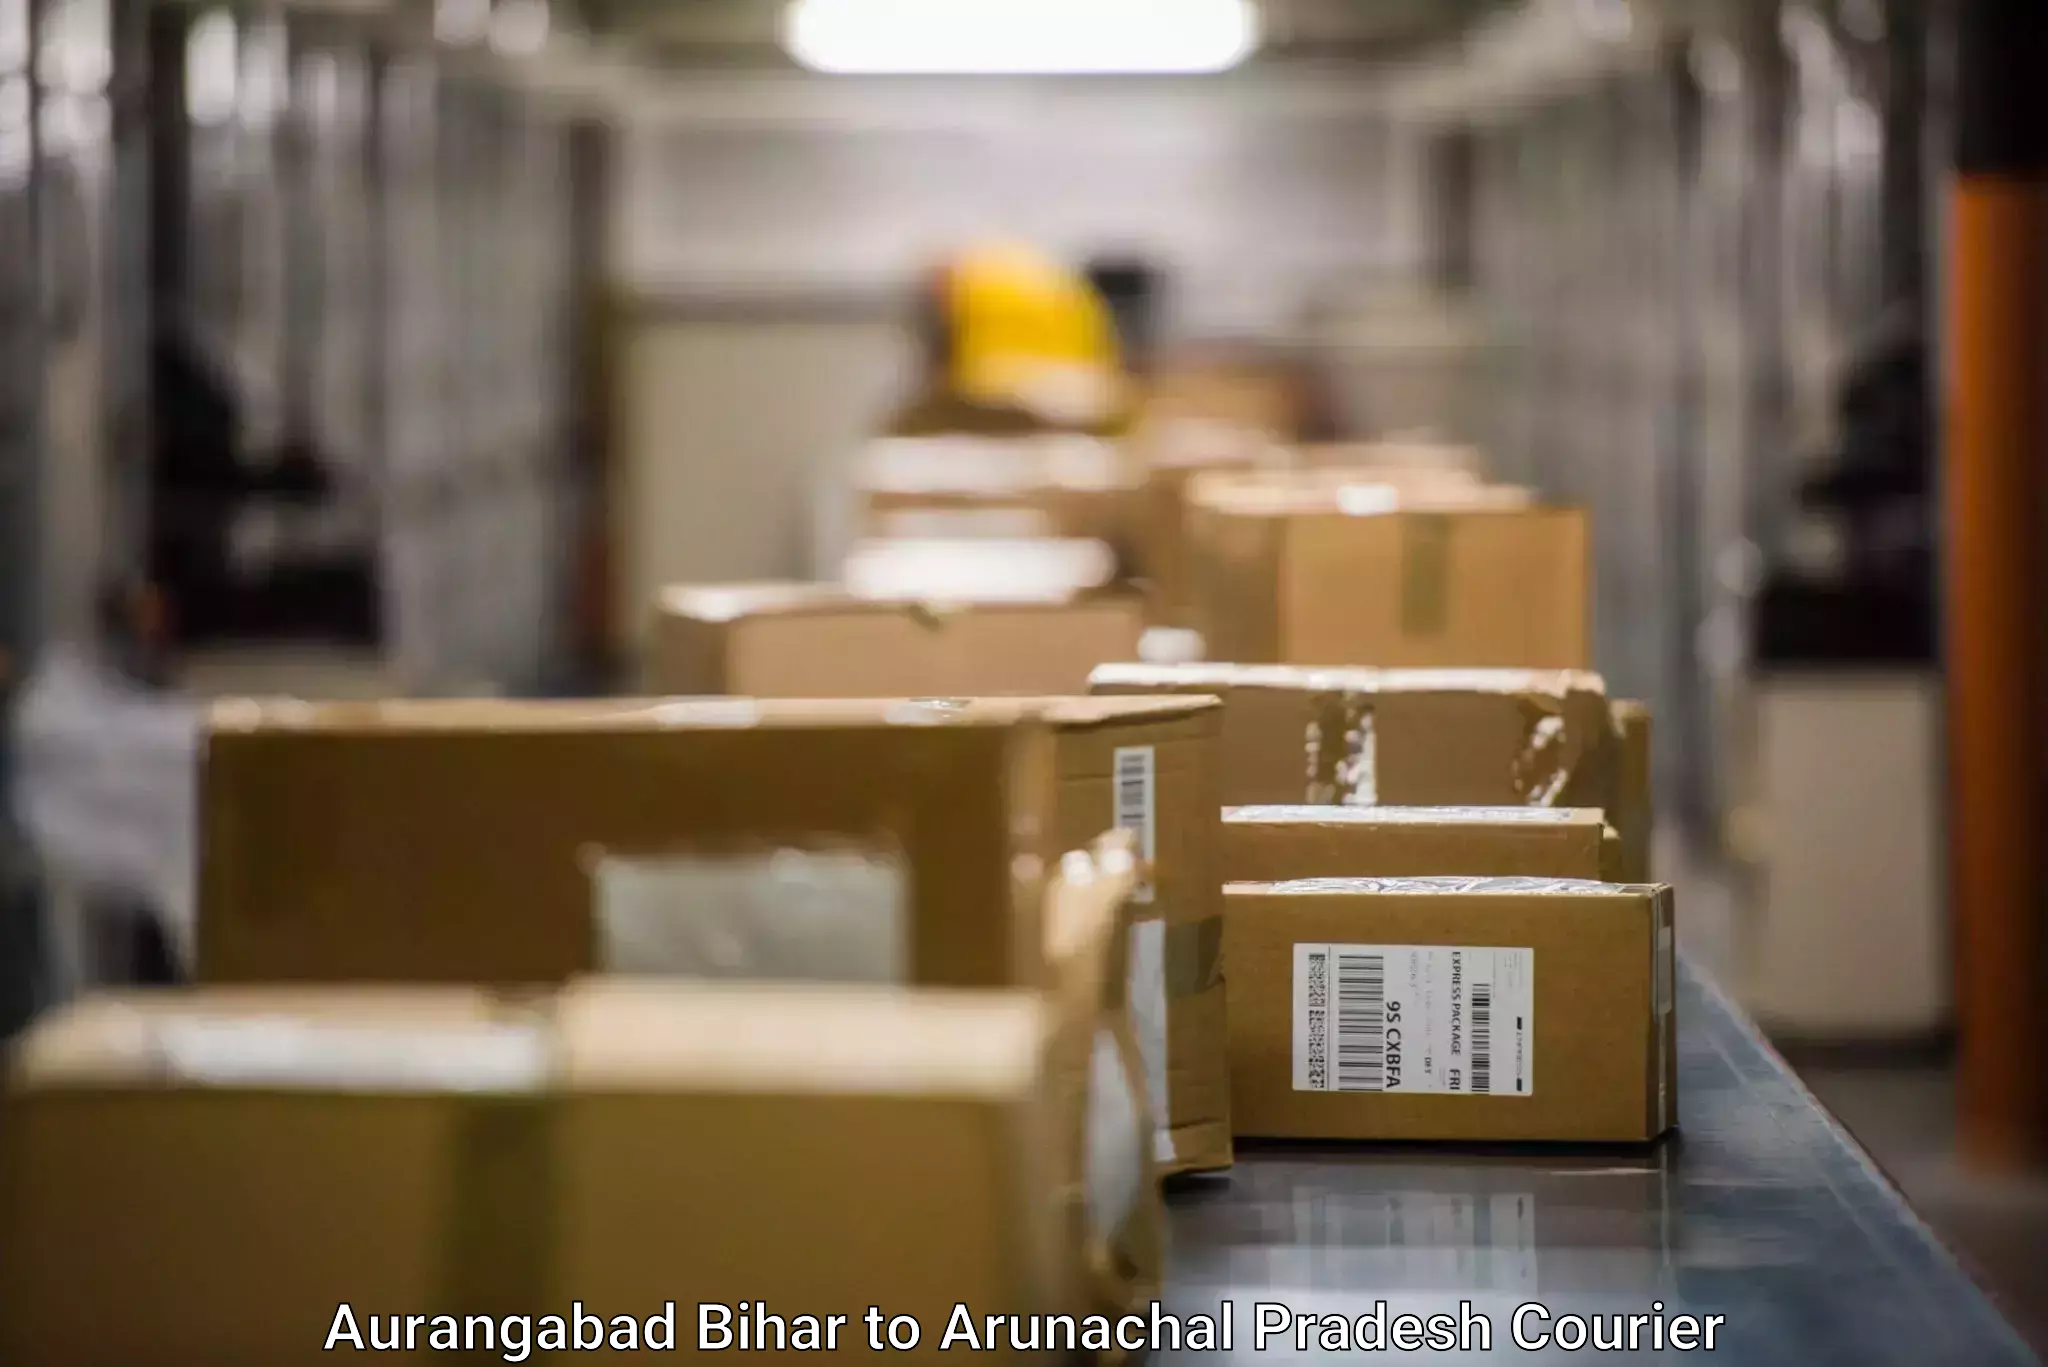 Door-to-door freight service in Aurangabad Bihar to Deomali